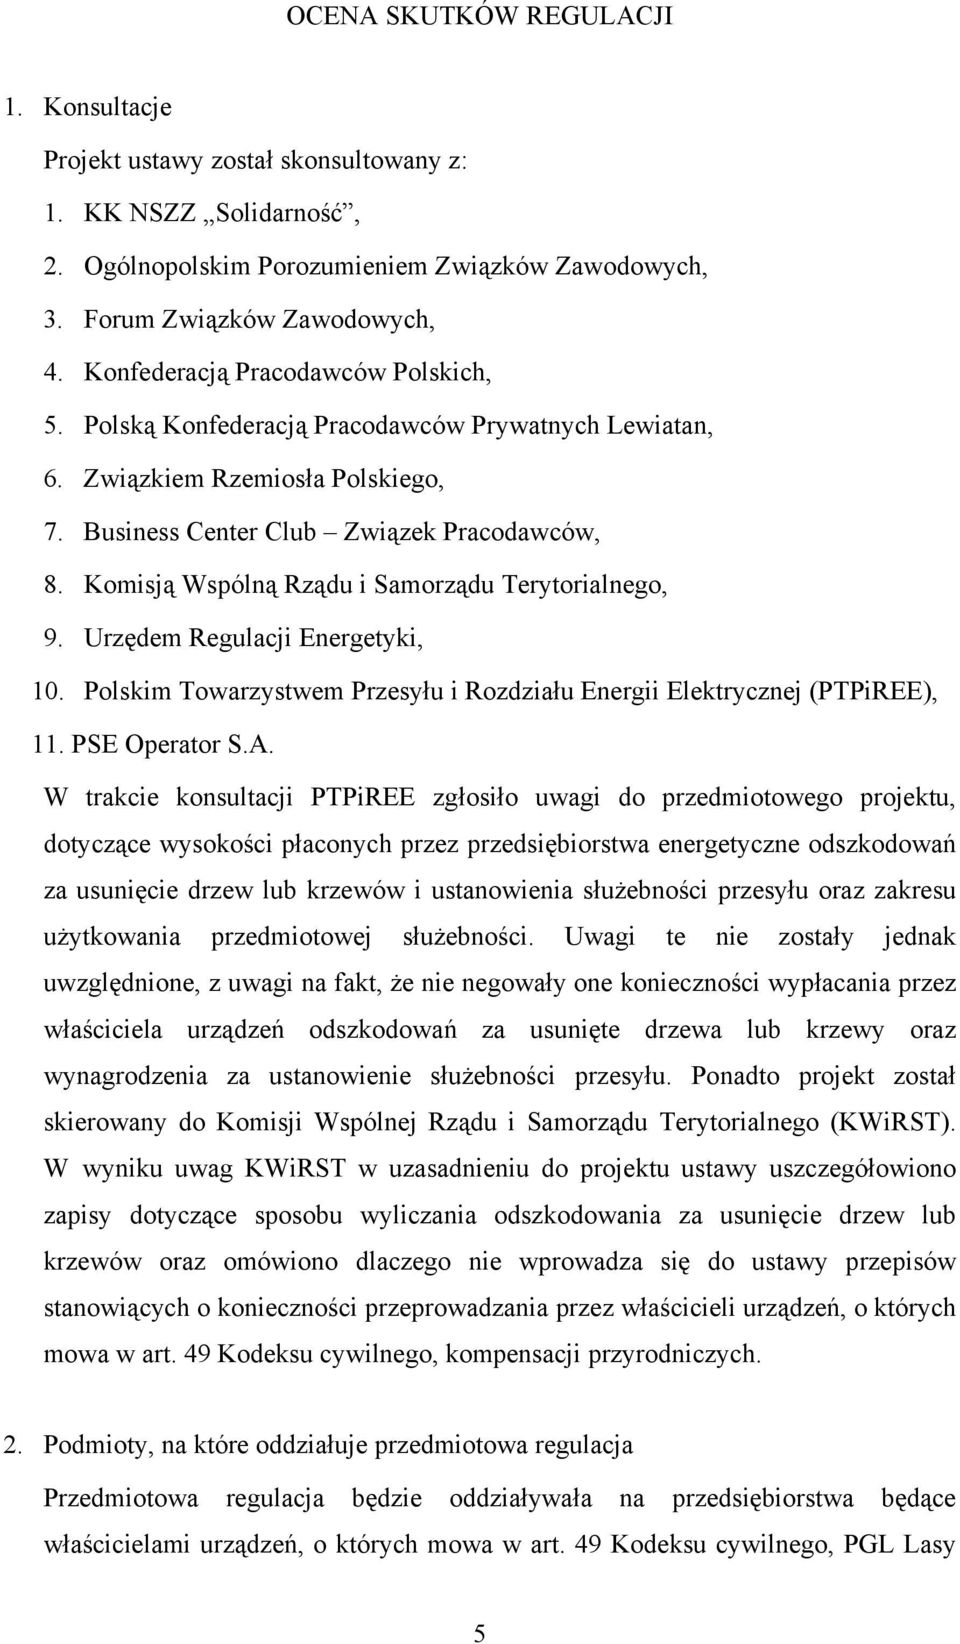 Komisją Wspólną Rządu i Samorządu Terytorialnego, 9. Urzędem Regulacji Energetyki, 10. Polskim Towarzystwem Przesyłu i Rozdziału Energii Elektrycznej (PTPiREE), 11. PSE Operator S.A.